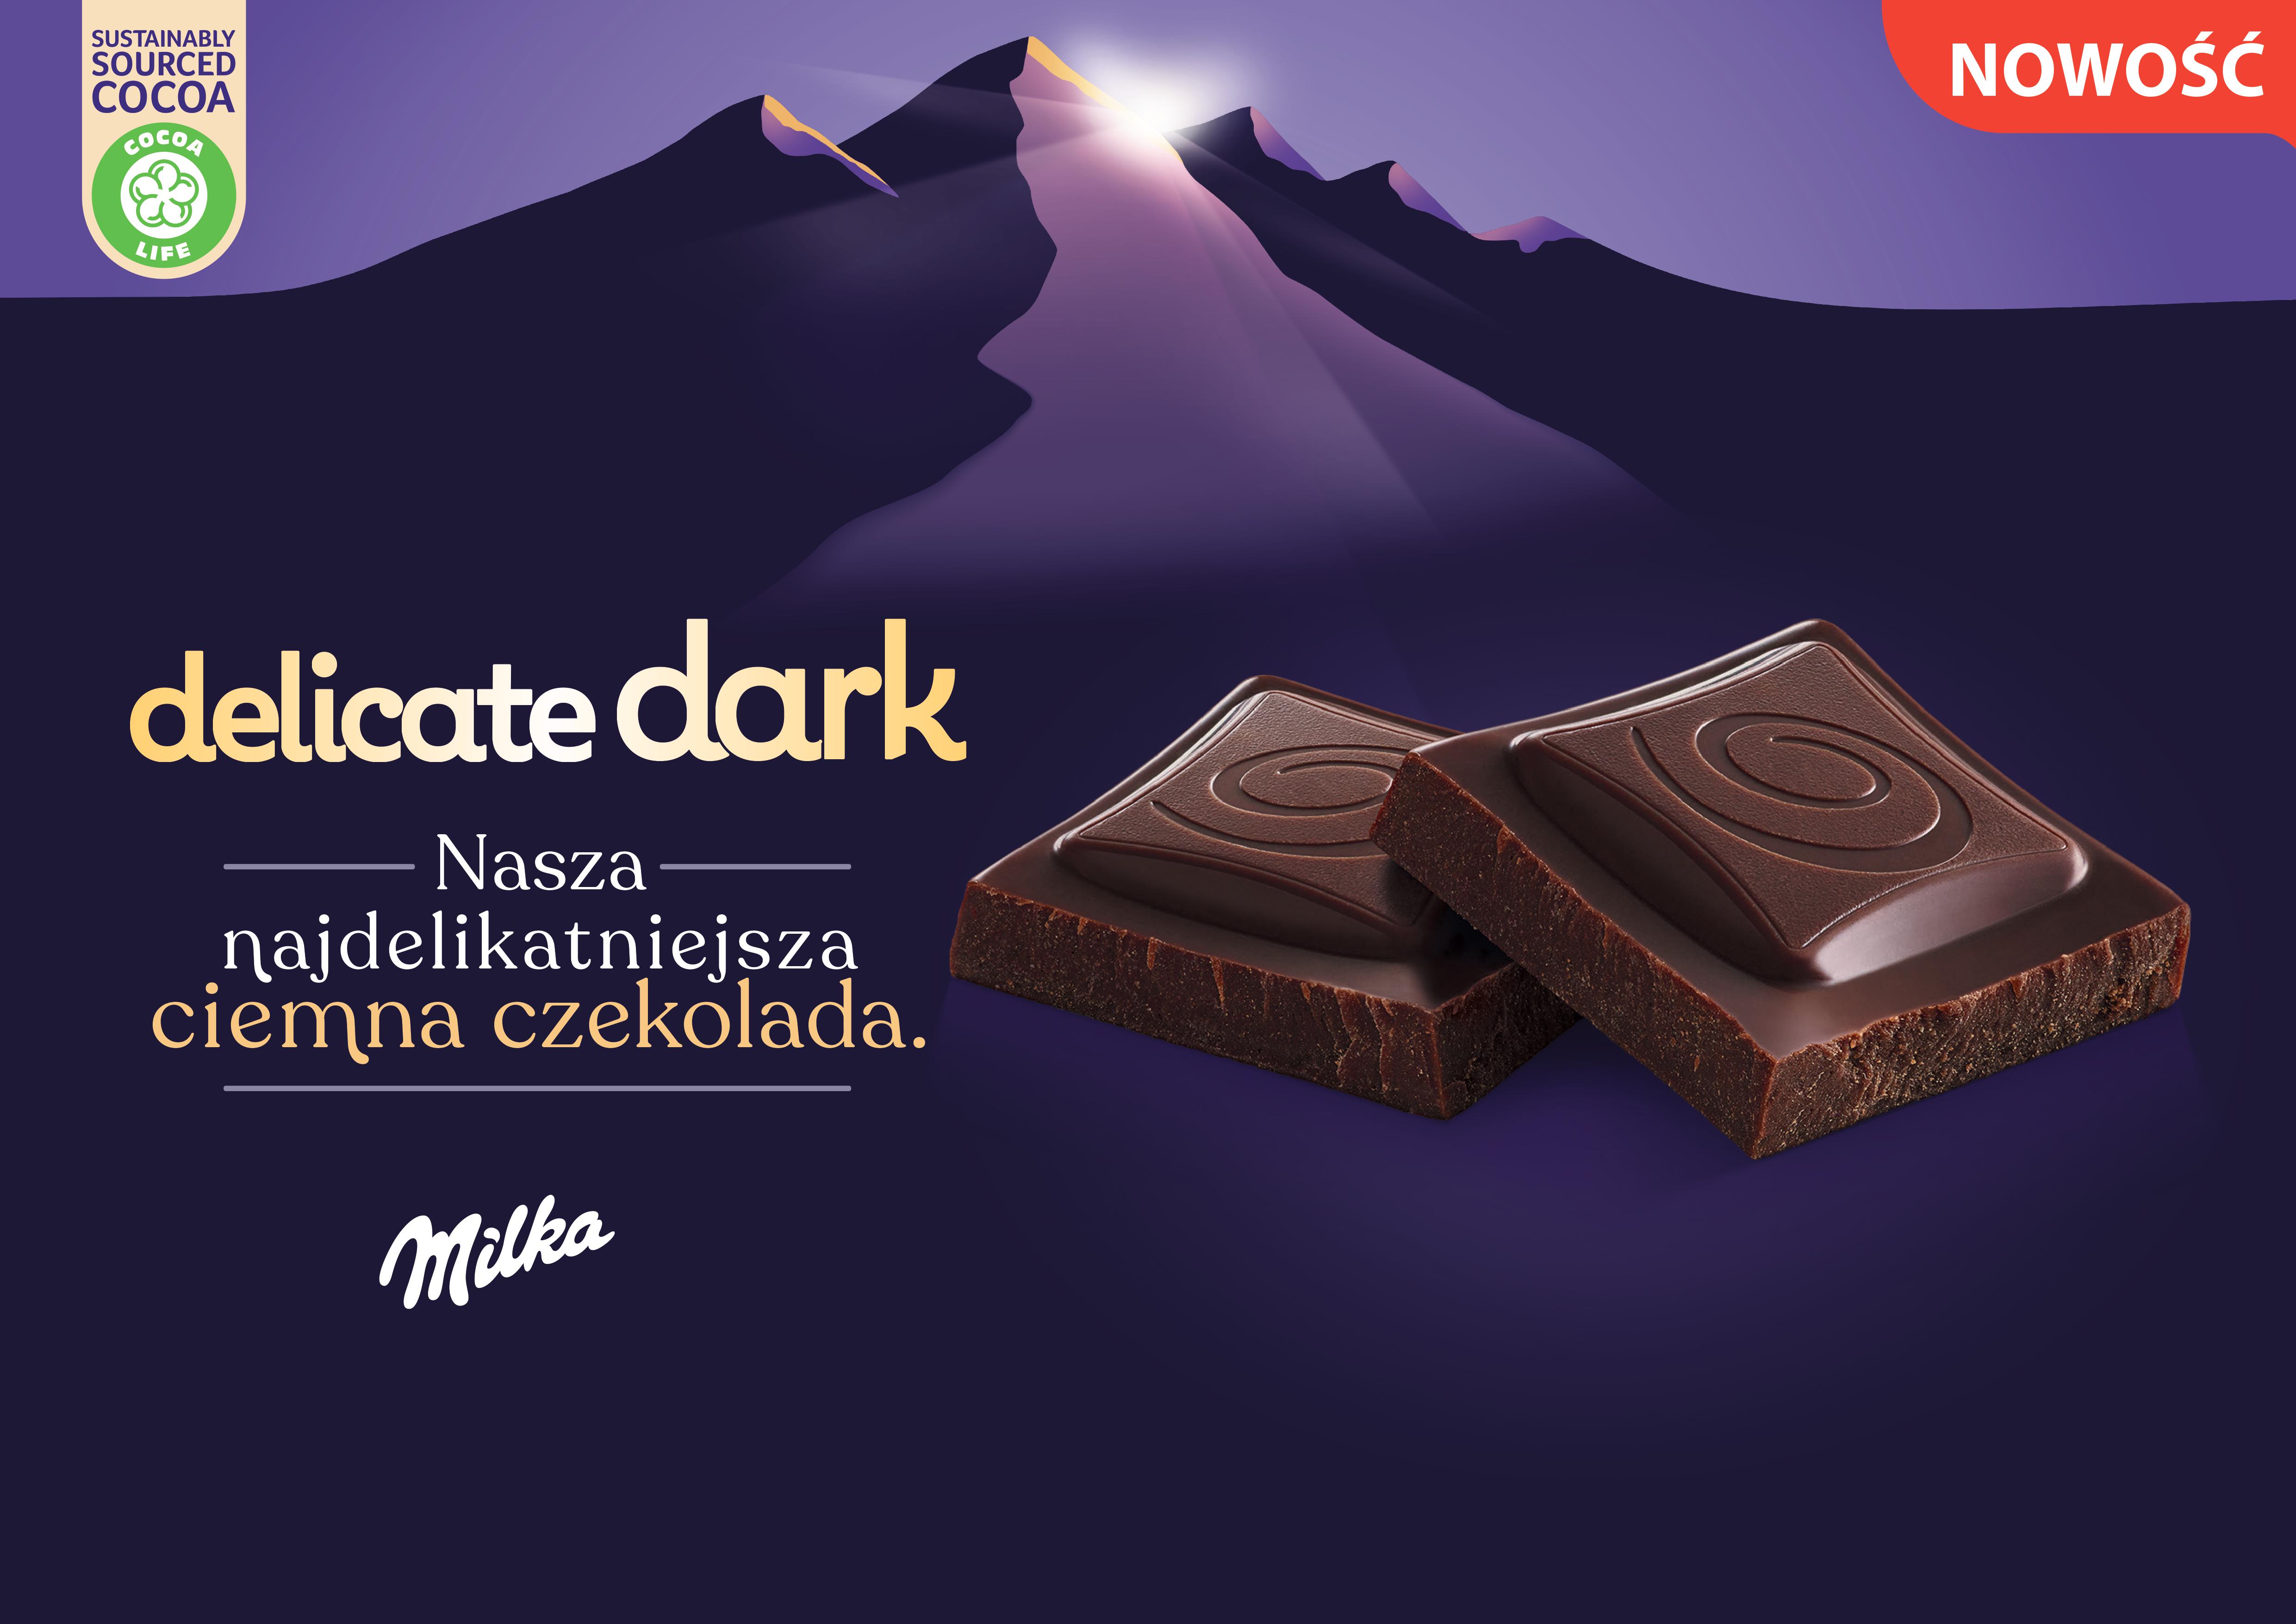 Nowa najdelikatniejsza czekolada Milka Delicate Dark